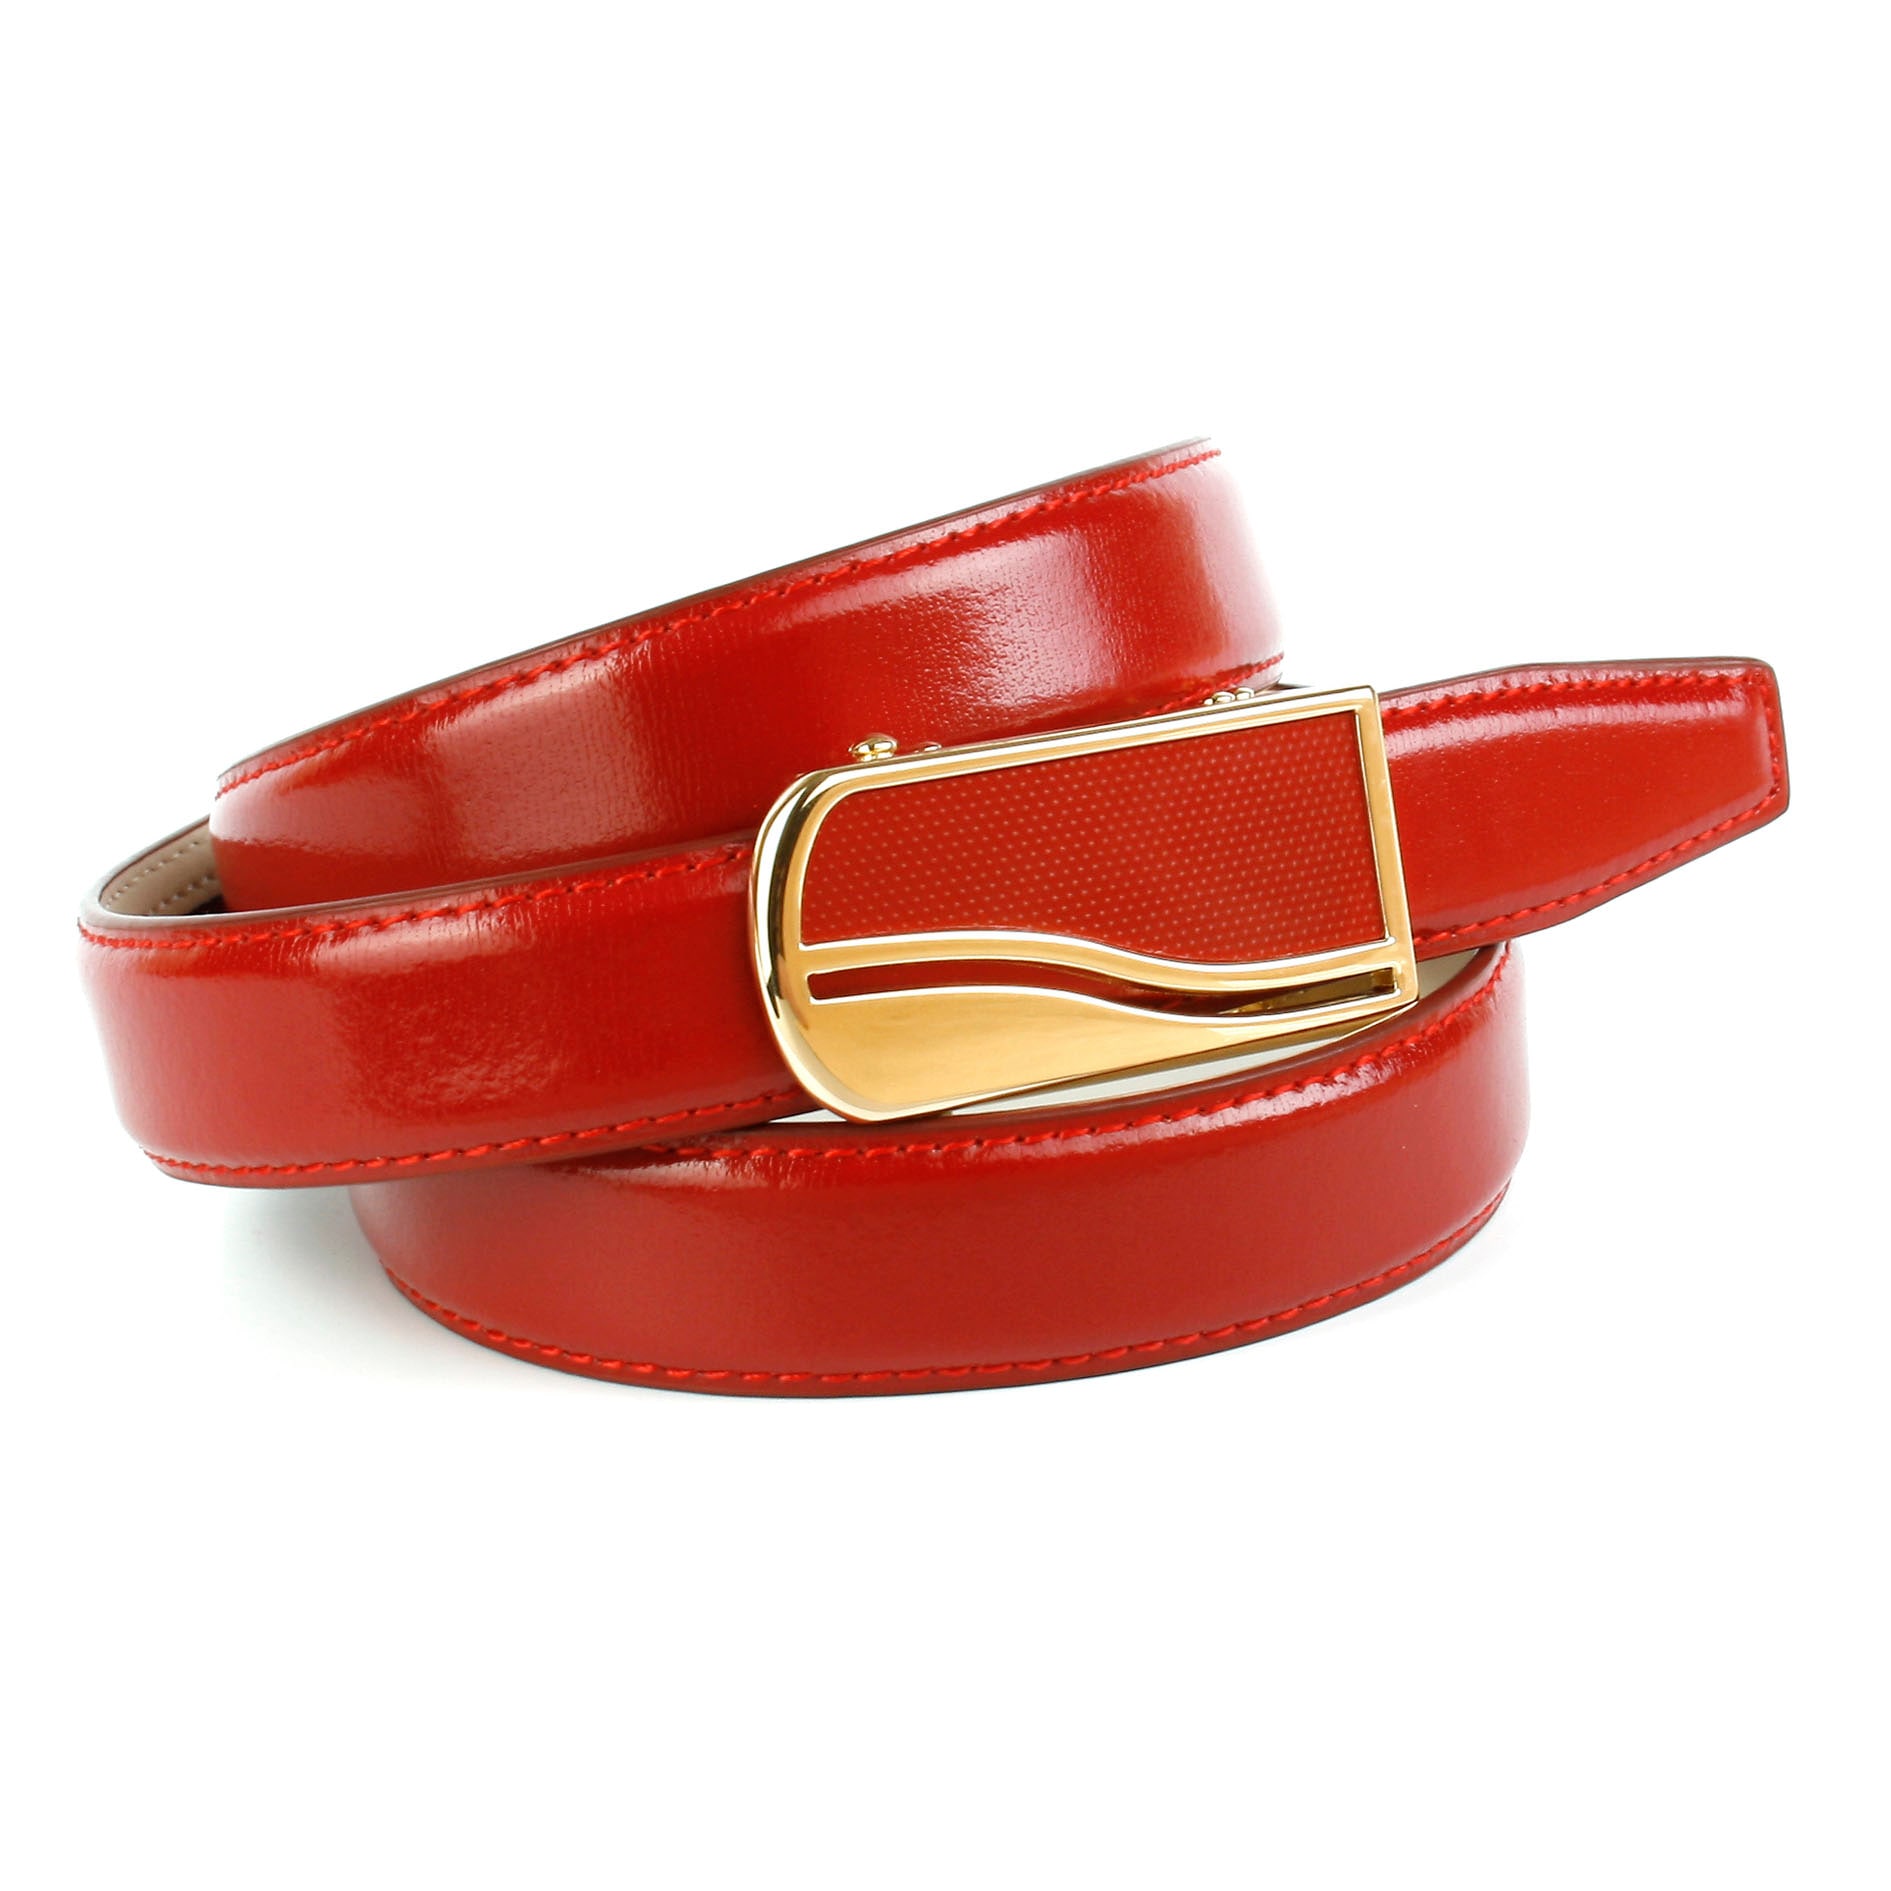 Anthoni Crown Ledergürtel, 2,4 cm femininer Ledergürtel in rot